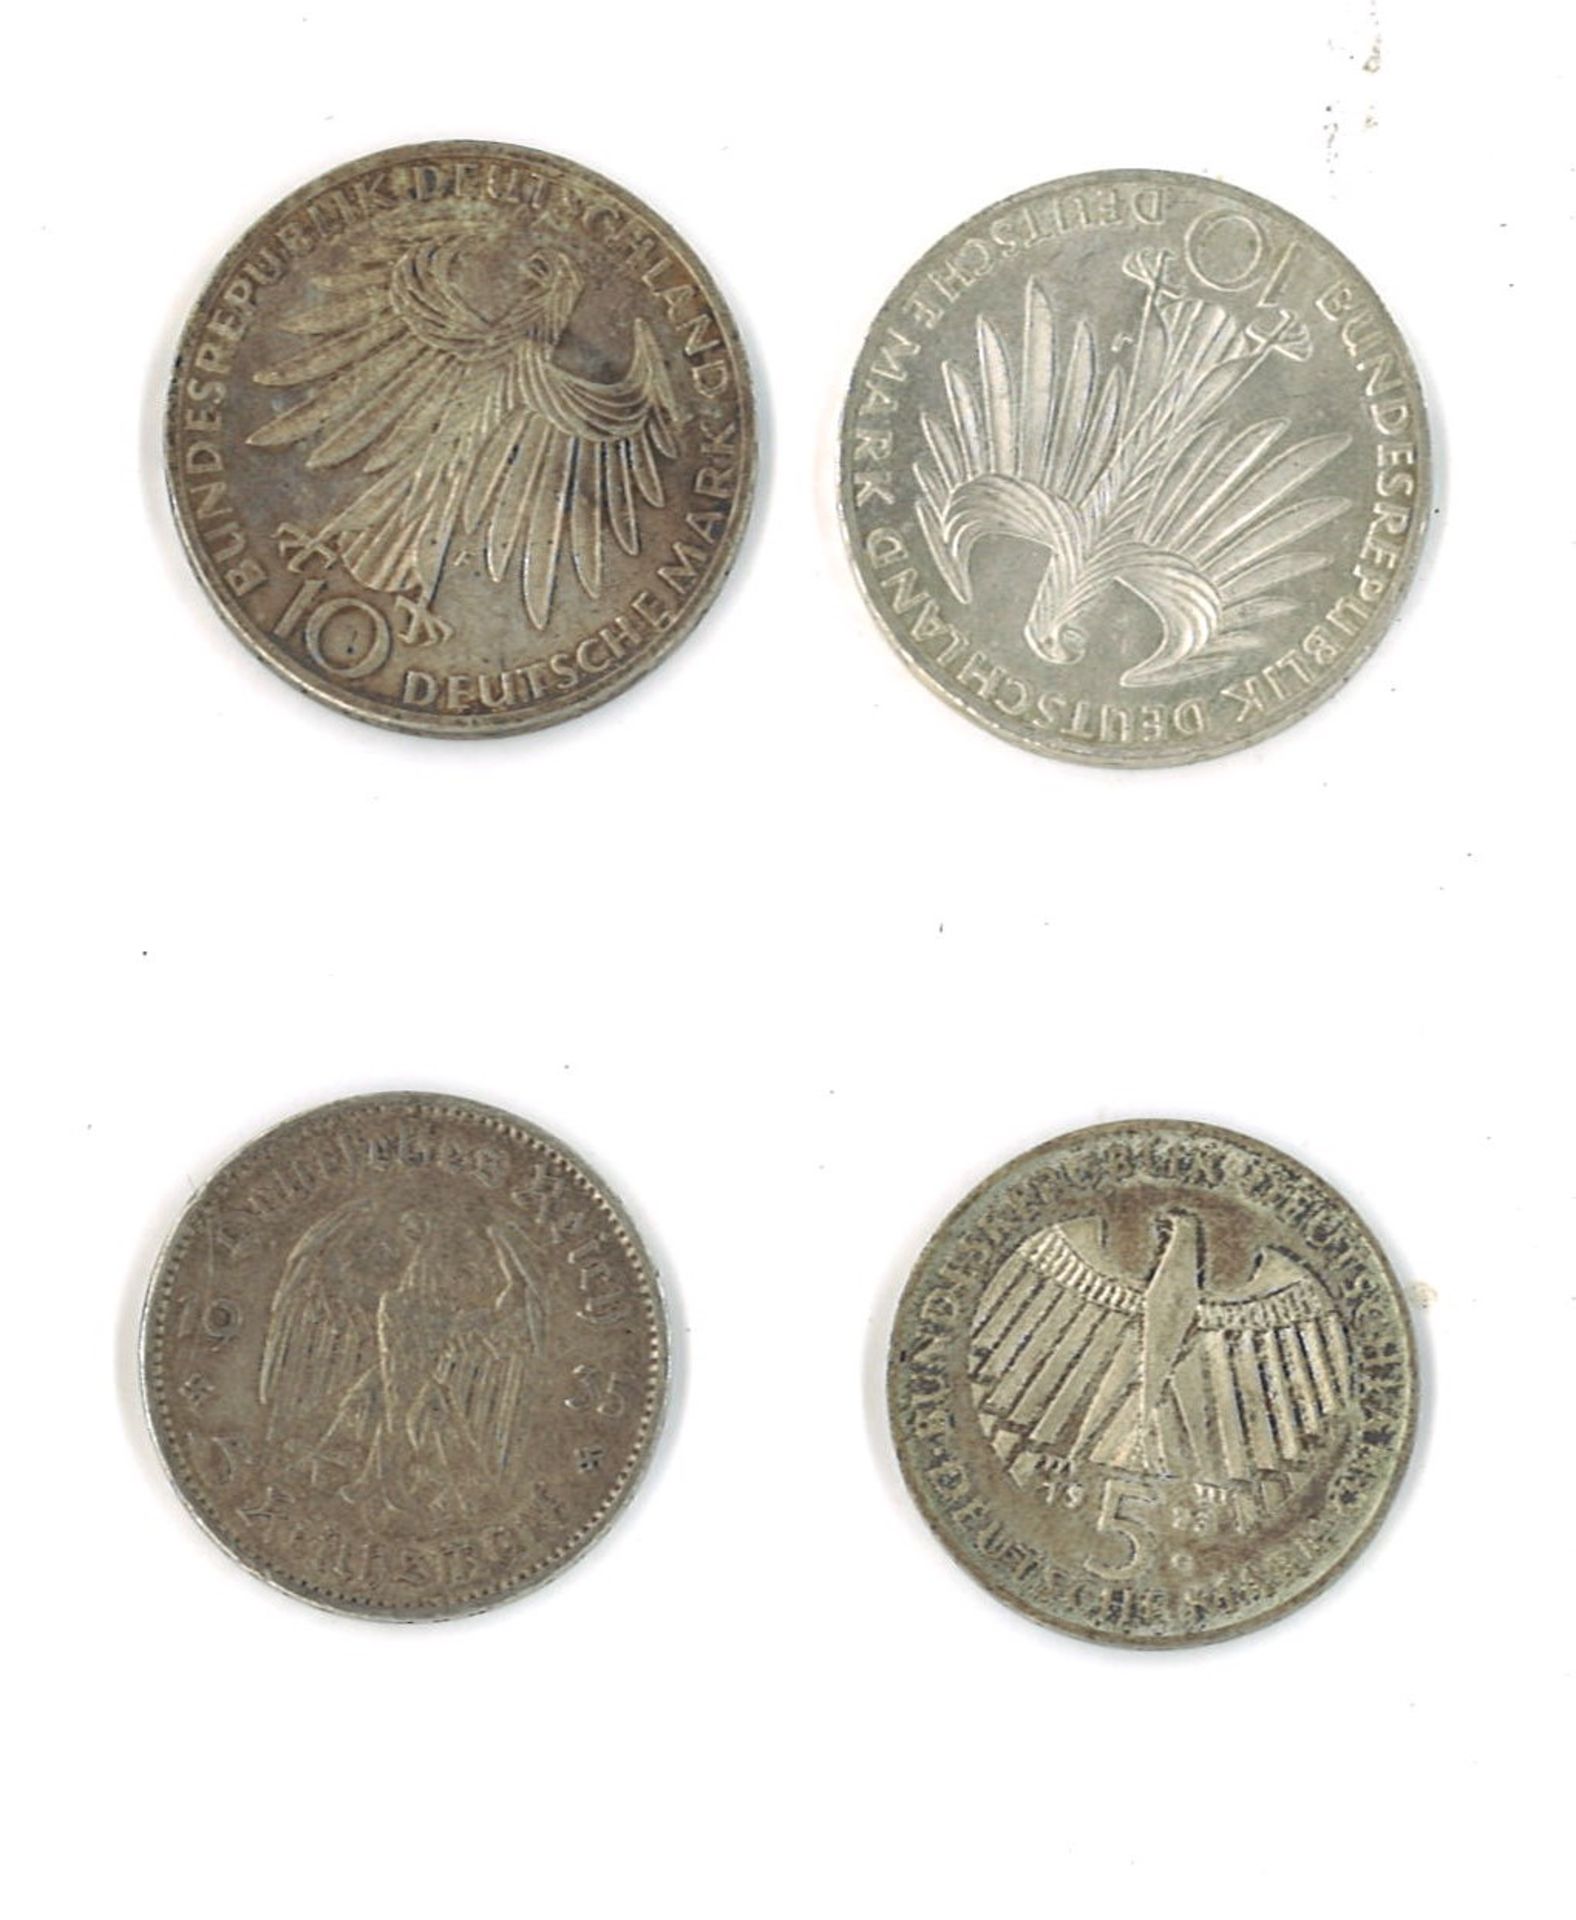 Lot Münzen BRD, bestehend aus 2x 10 DM, 1x 5 DM, sowie 1x 5 Mark Deutsches Reich - Image 2 of 2